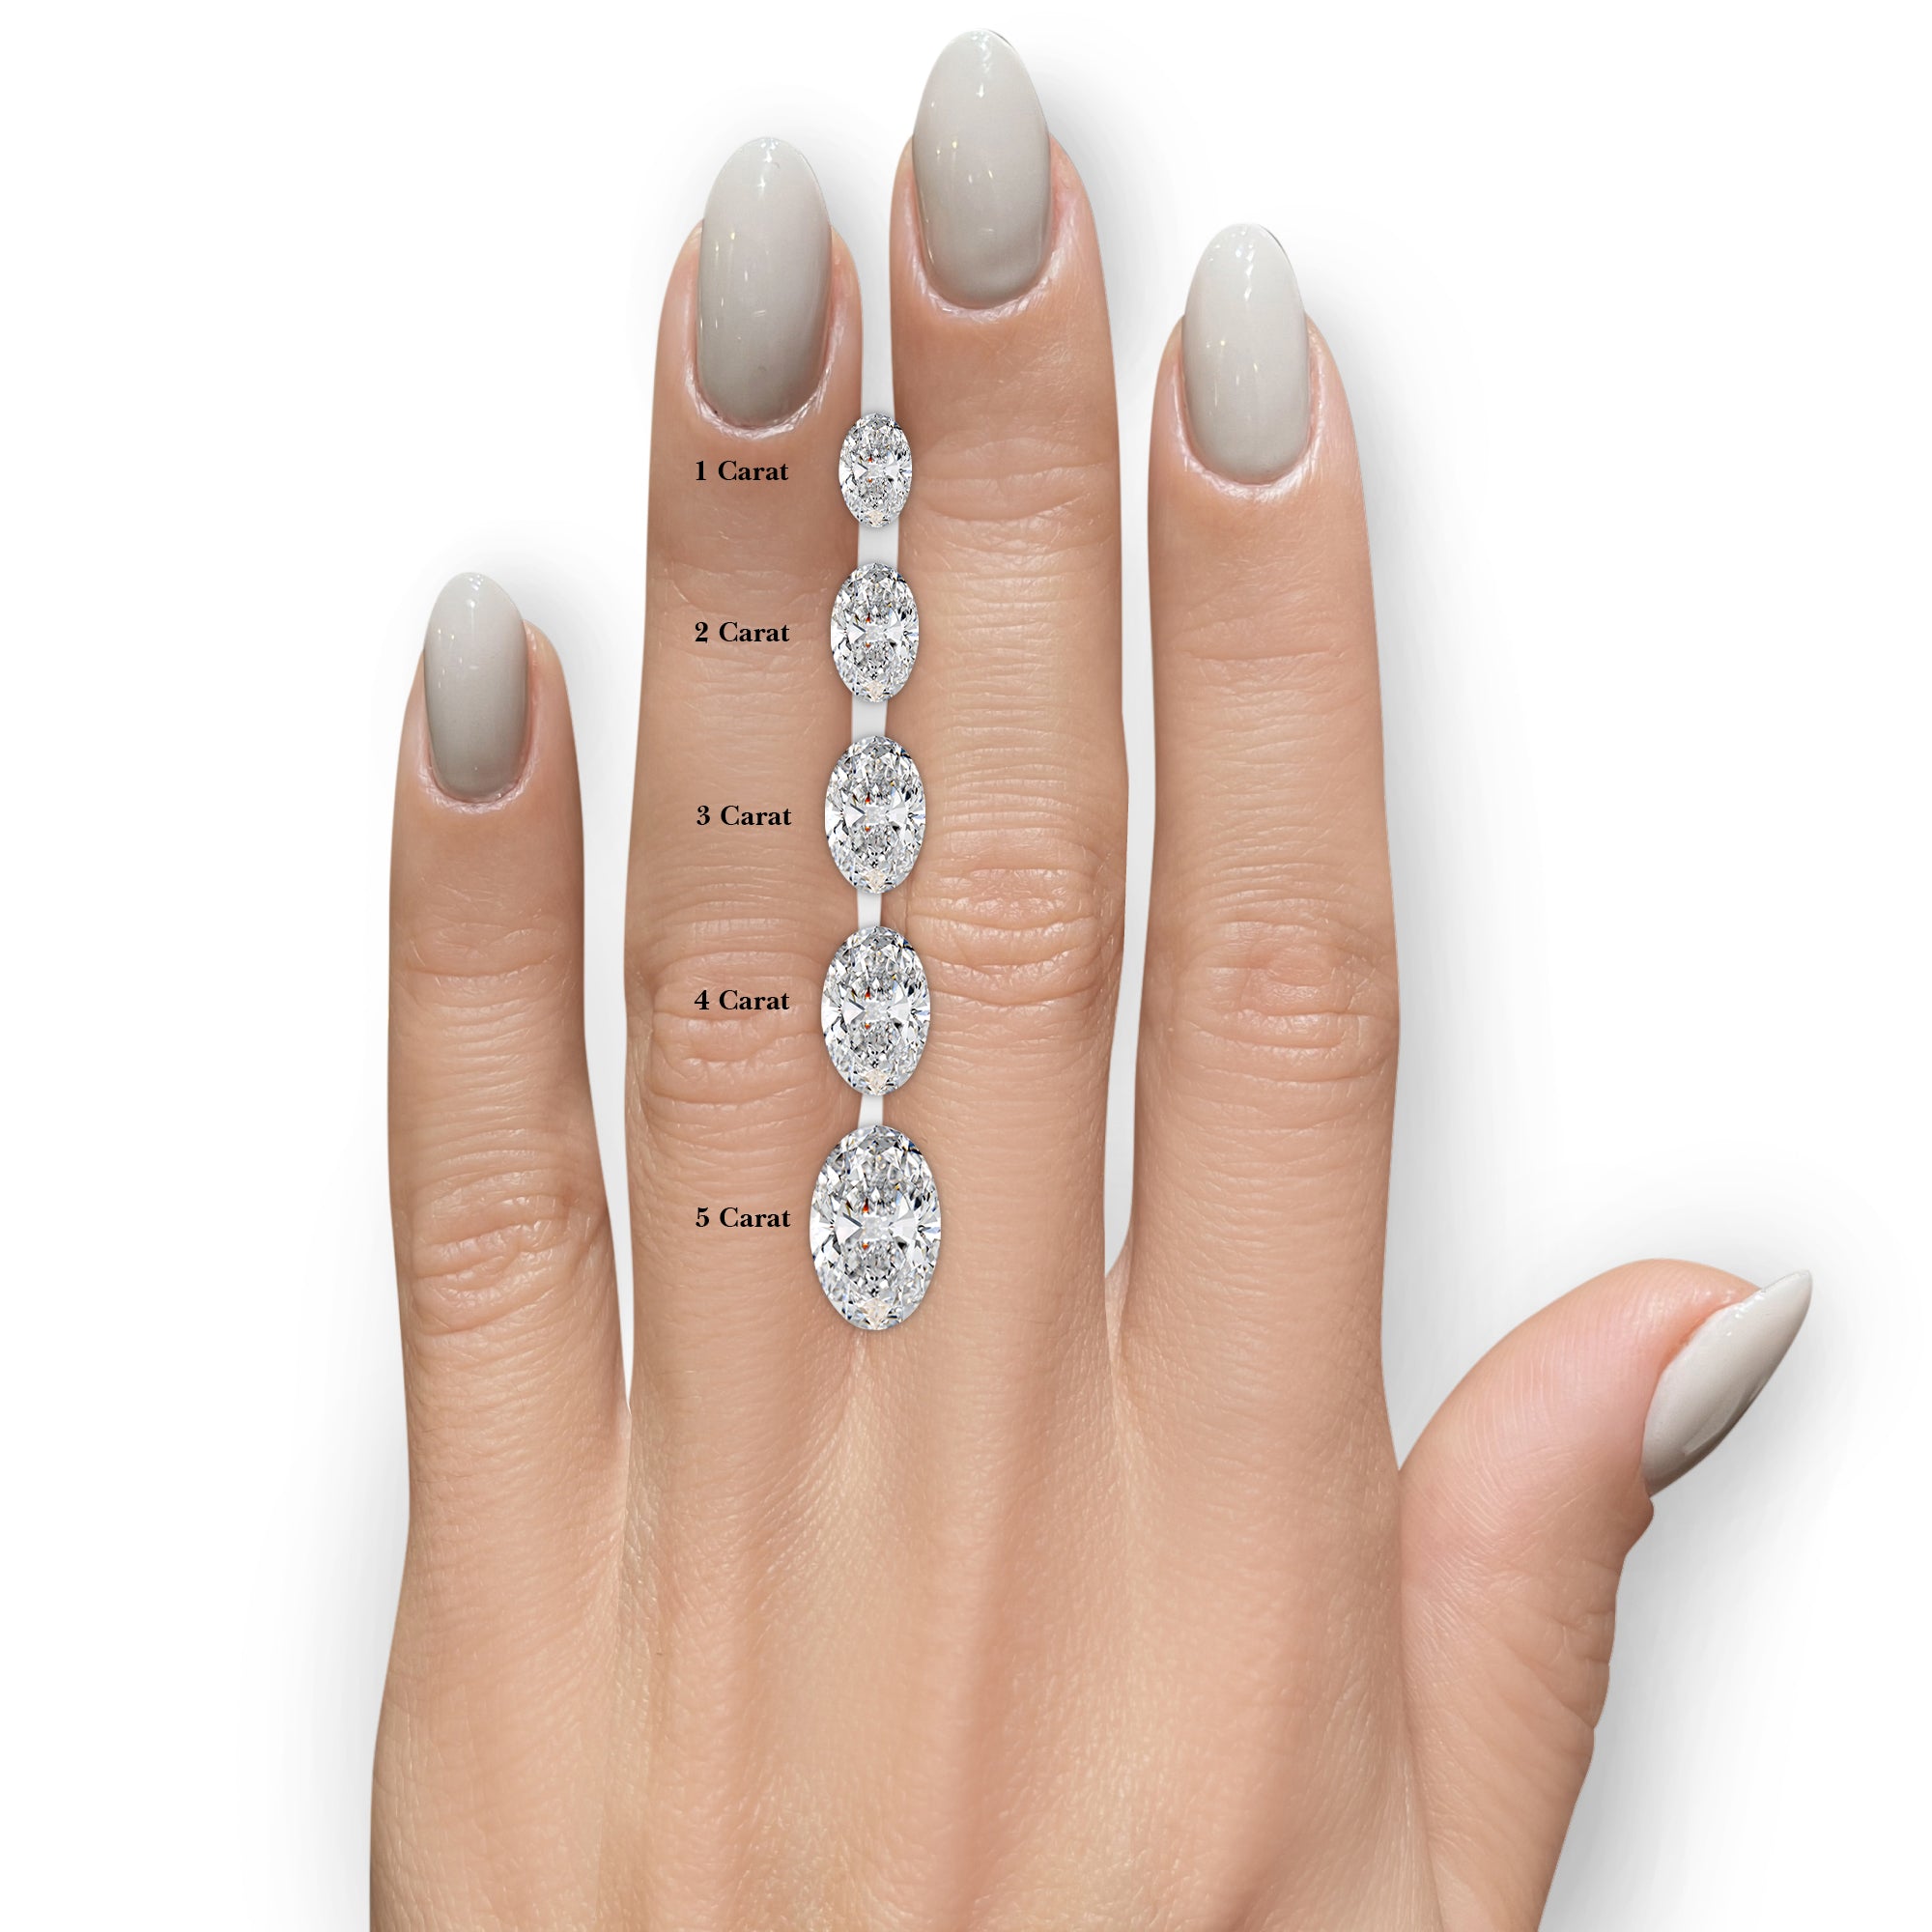 Rebecca Moissanite & Diamonds Ring -Platinum